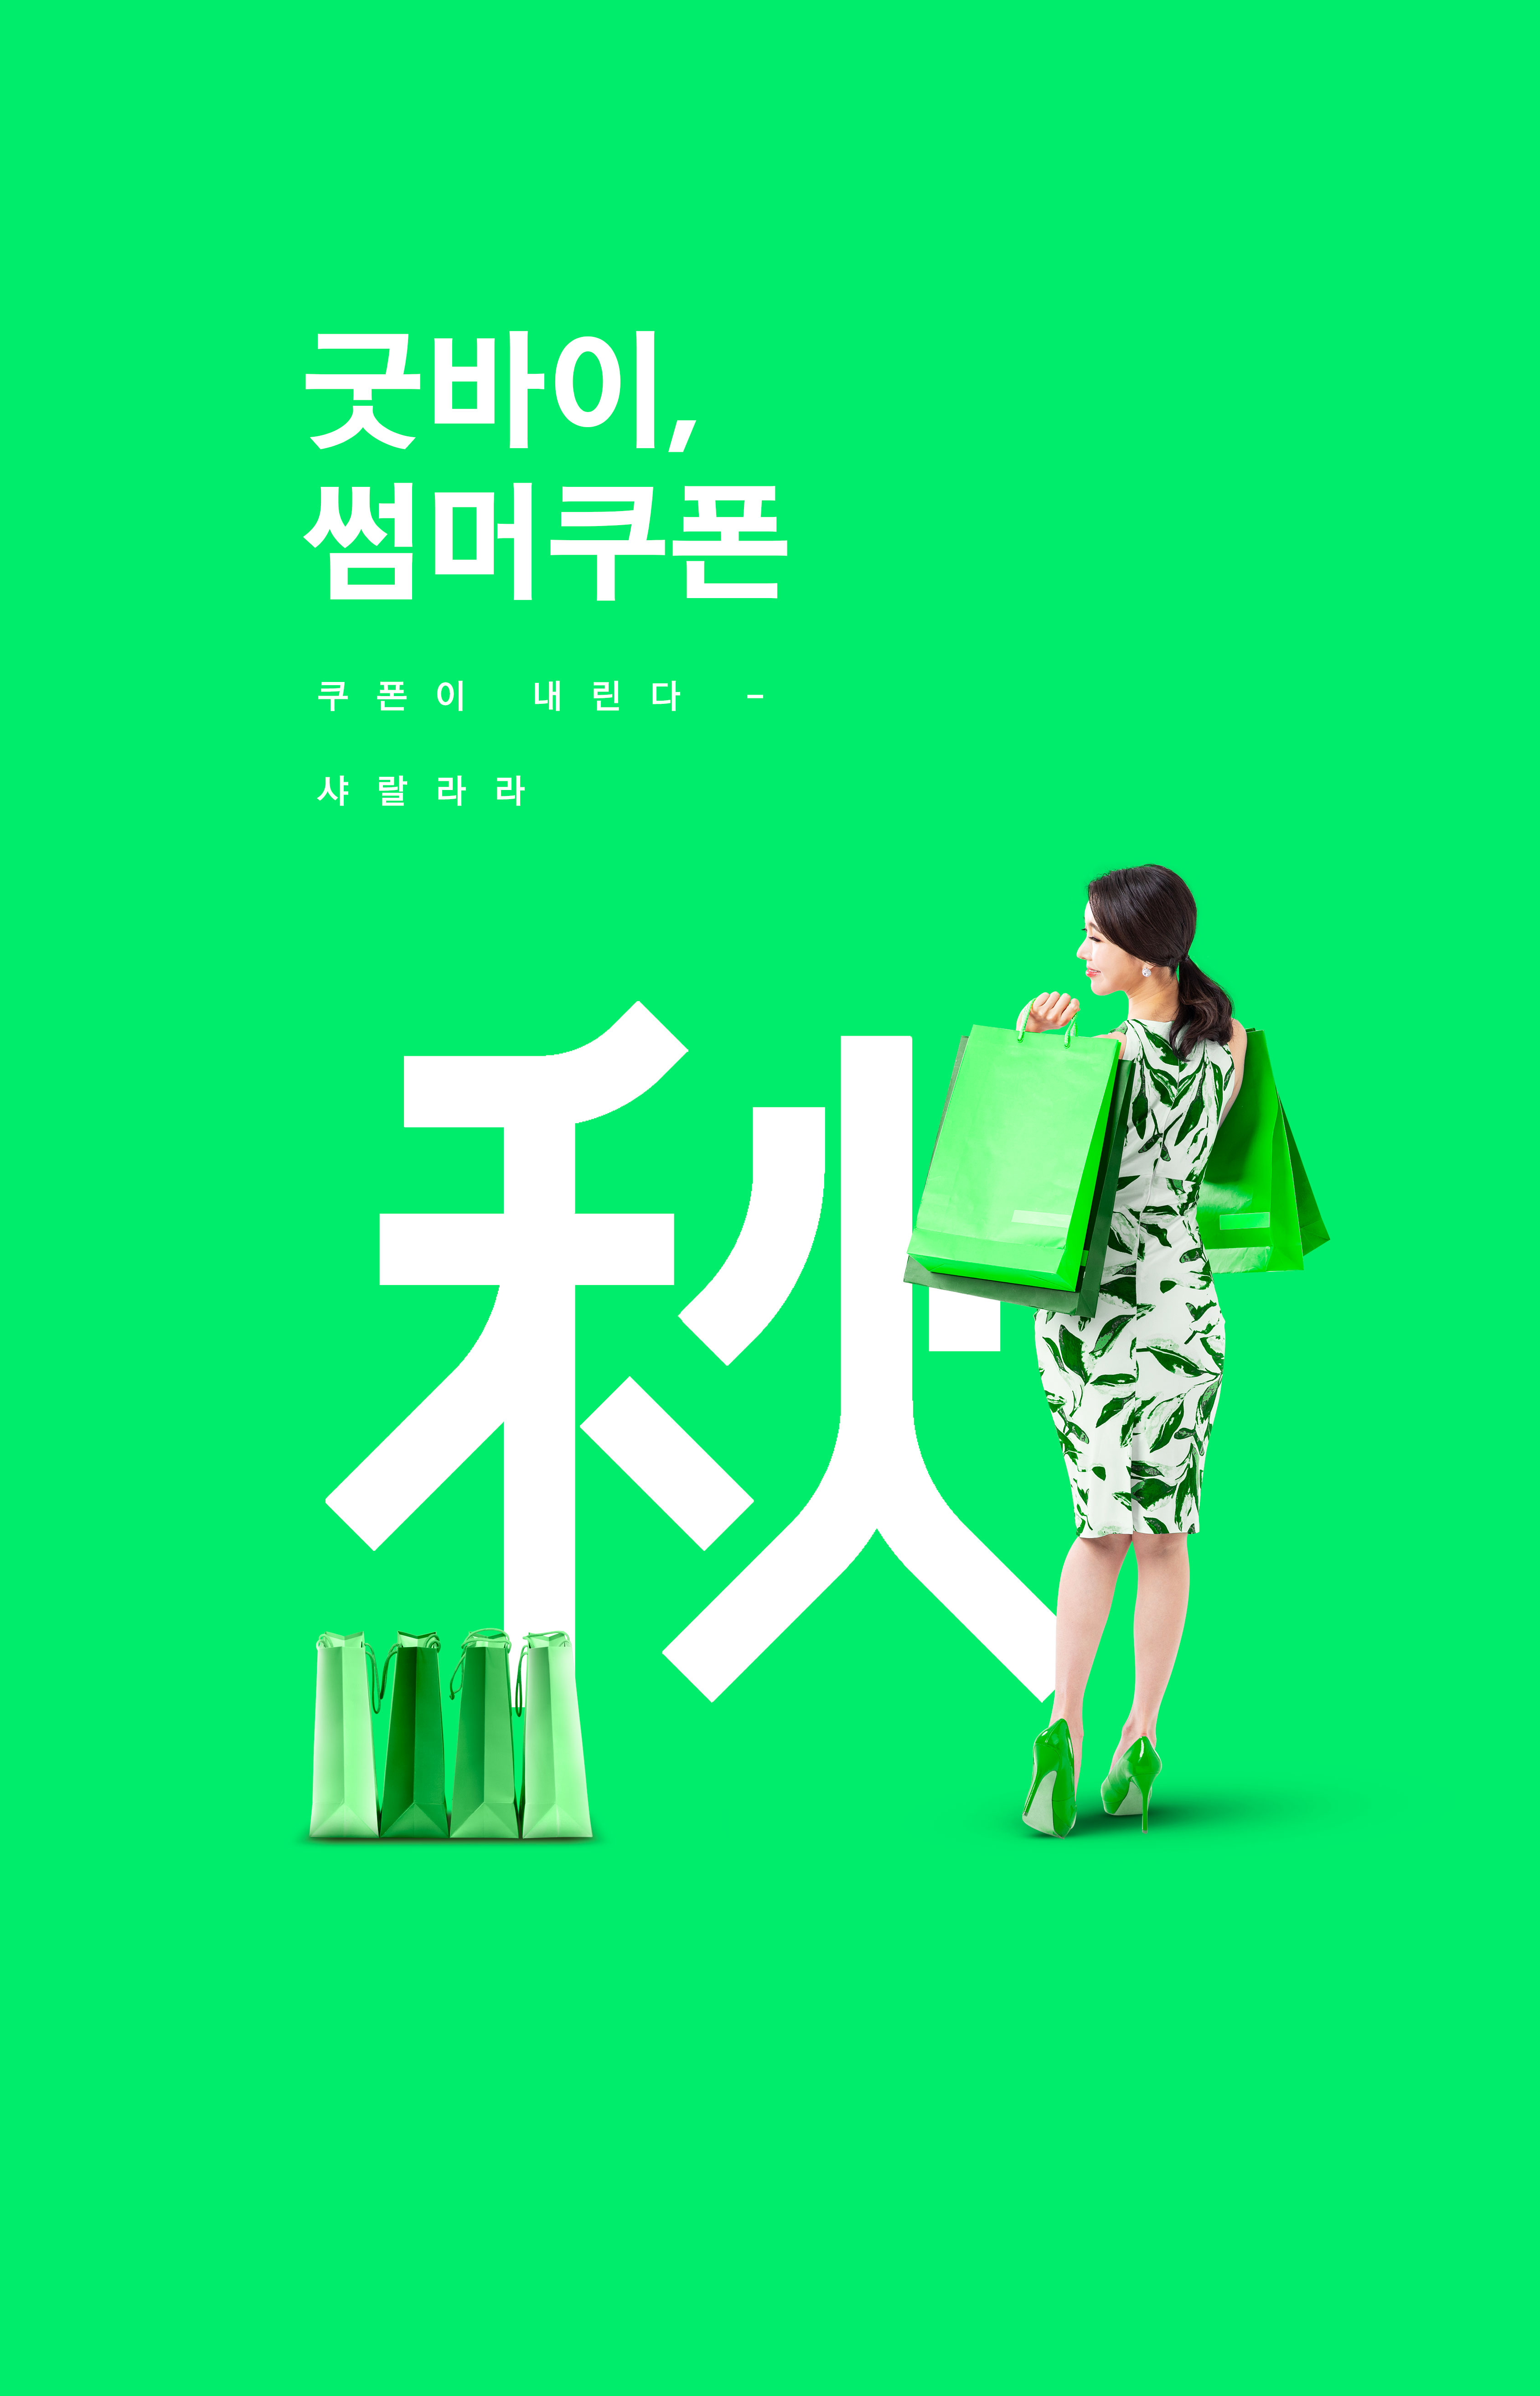 绿色系购物活动宣传海报设计模板插图